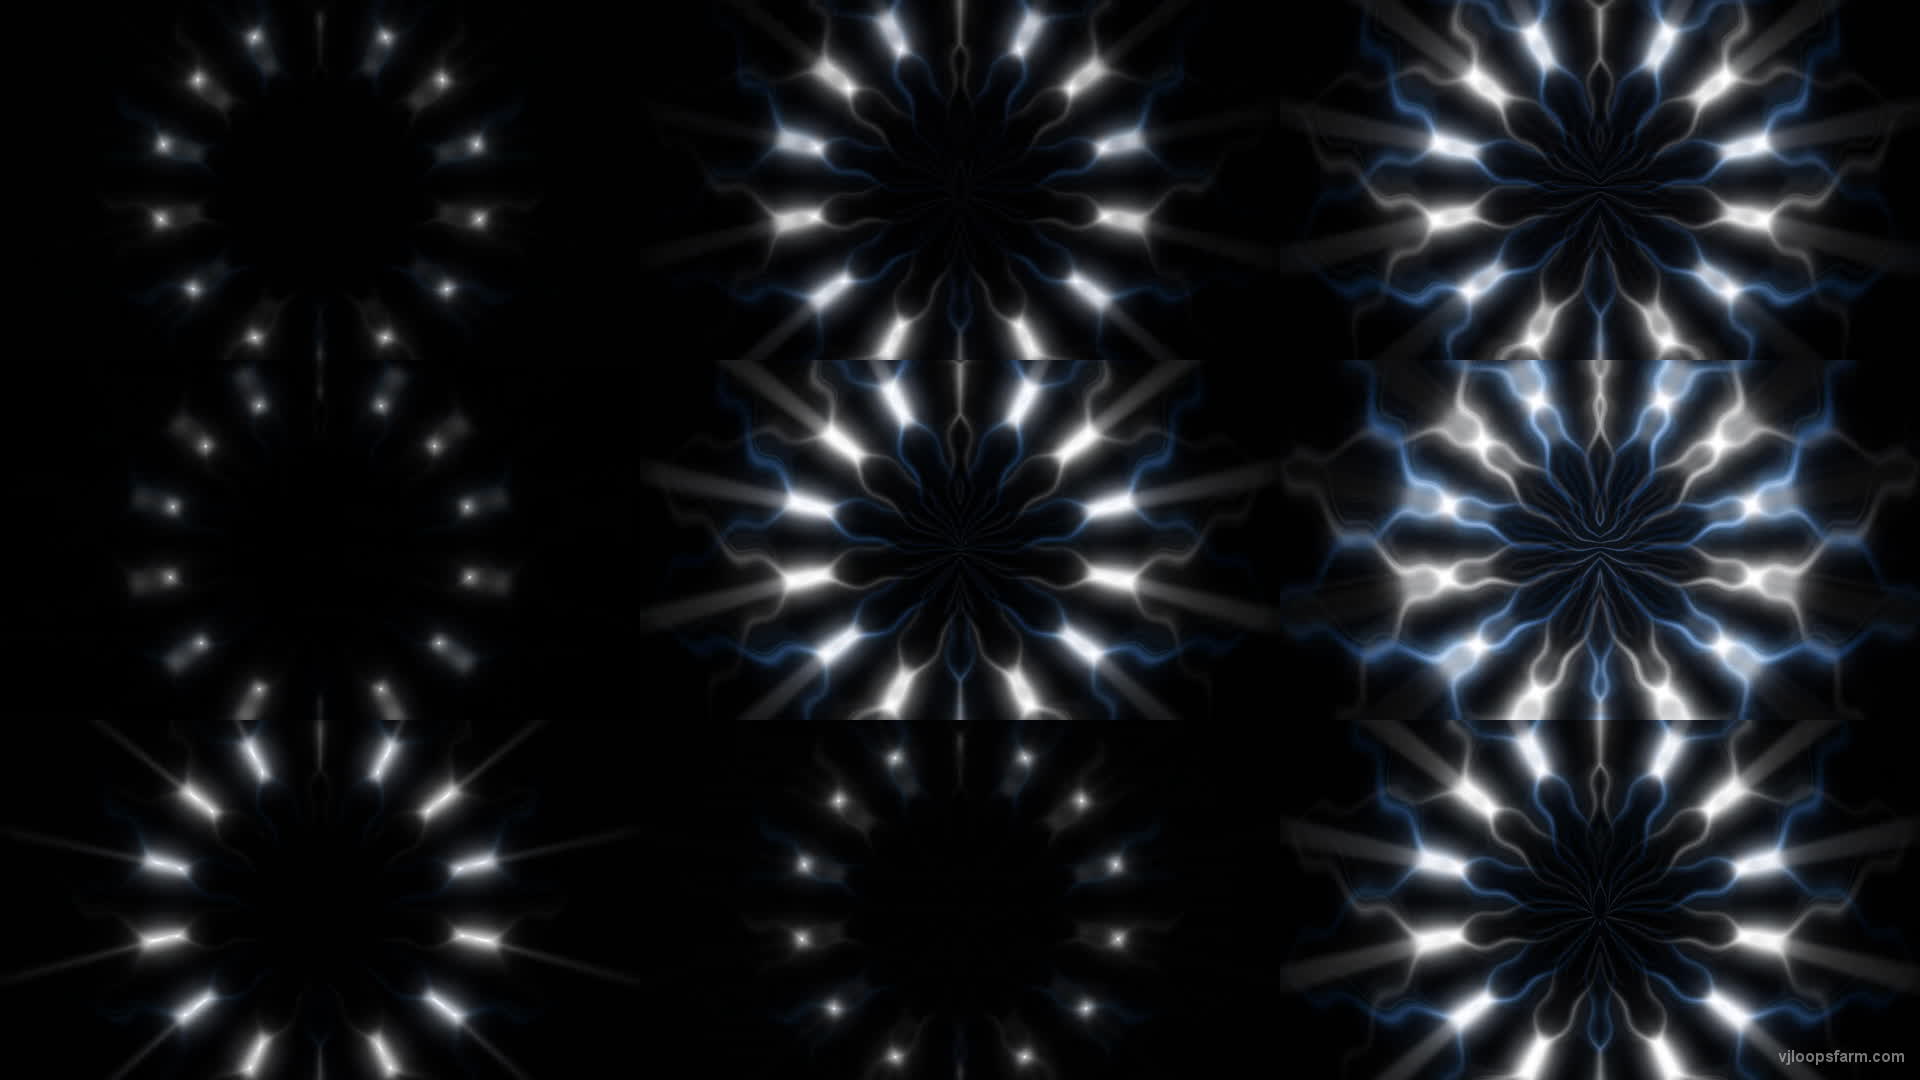 Blue White Video Art Cyber Flower blinking UHD VJ Loop